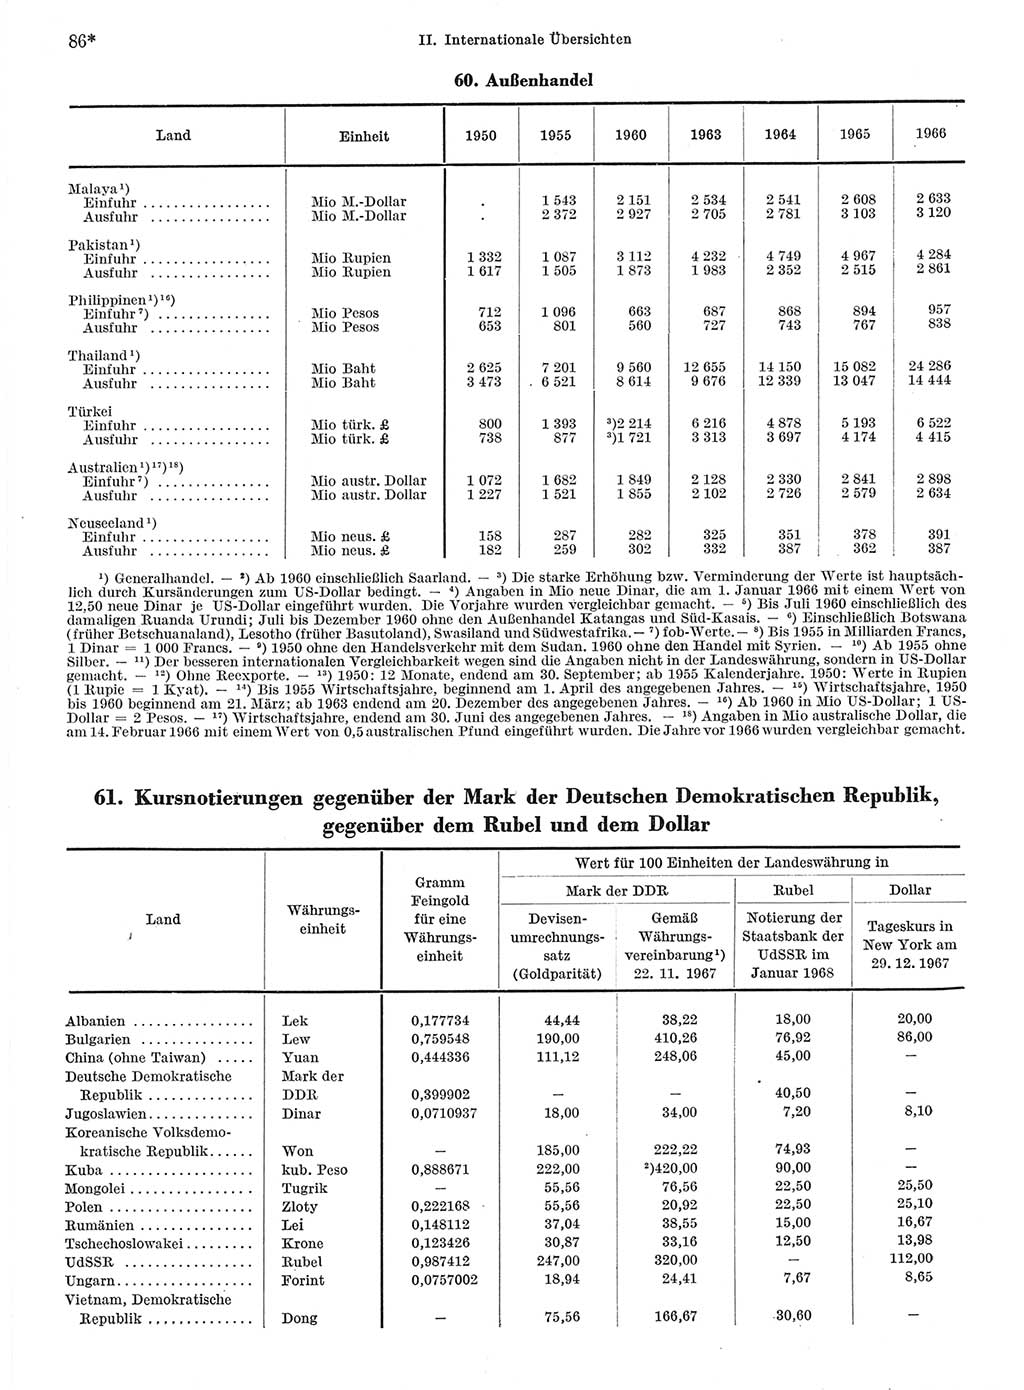 Statistisches Jahrbuch der Deutschen Demokratischen Republik (DDR) 1968, Seite 86 (Stat. Jb. DDR 1968, S. 86)